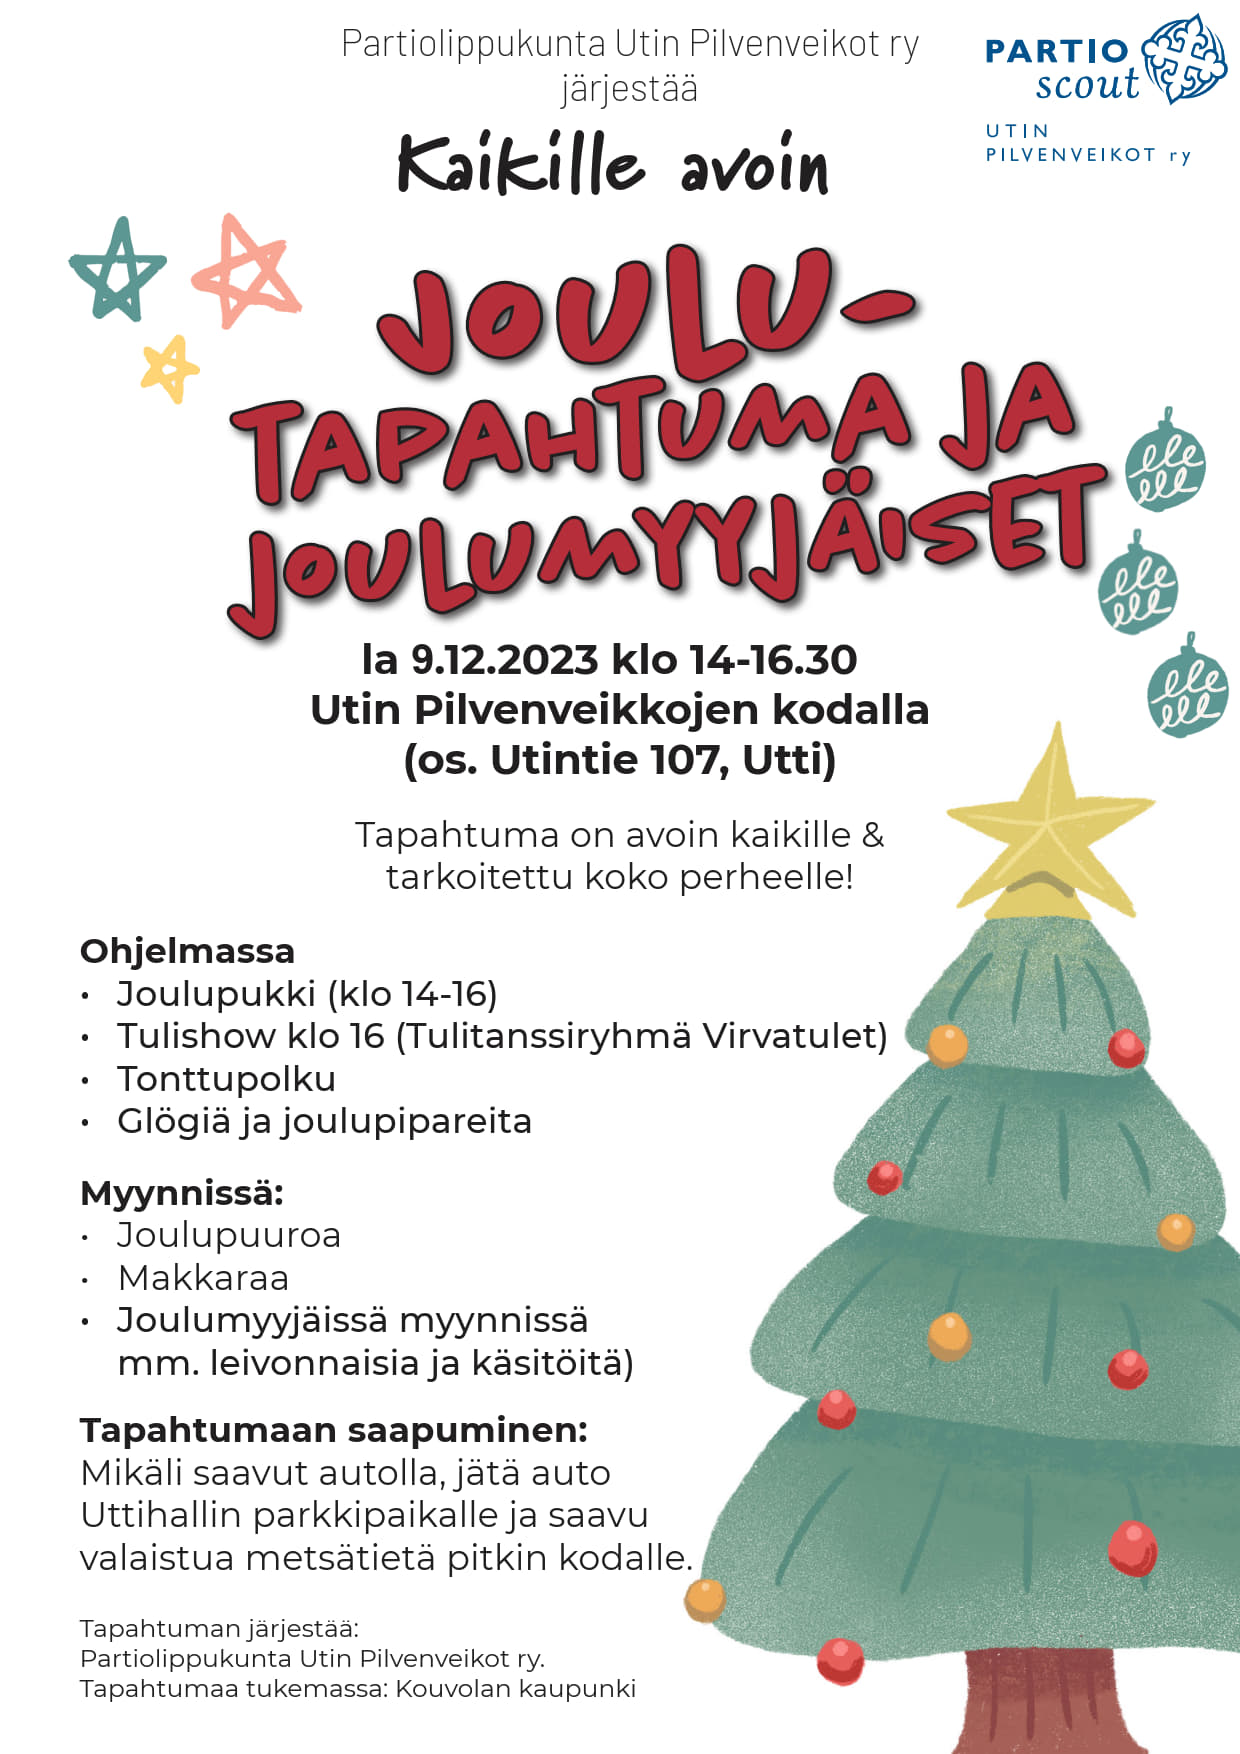 9.12. klo 14-16.30 joulutapahtuma Utin Pilvenveikkojen kodalla Utintie 107.